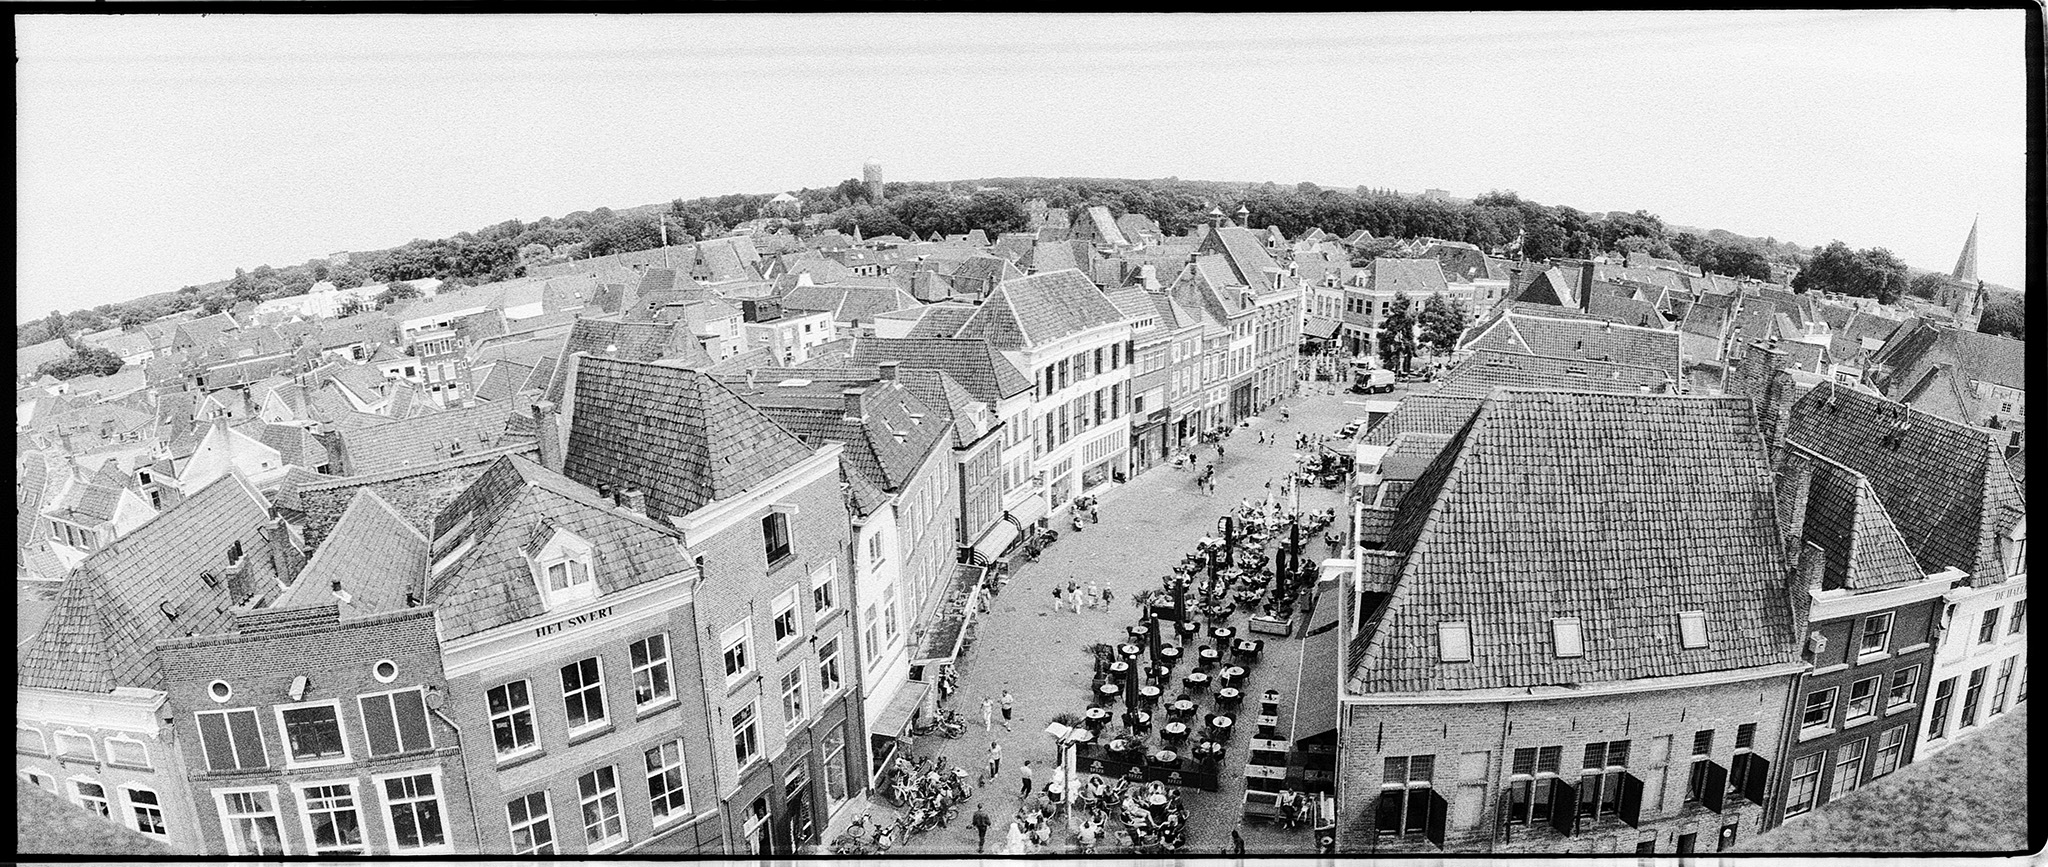 Zutphen gezien vanaf de Wijnhuistoren, de Houtmarkt. Foto is gemaakt met een Horizon202 camera op Ilford FP4+.